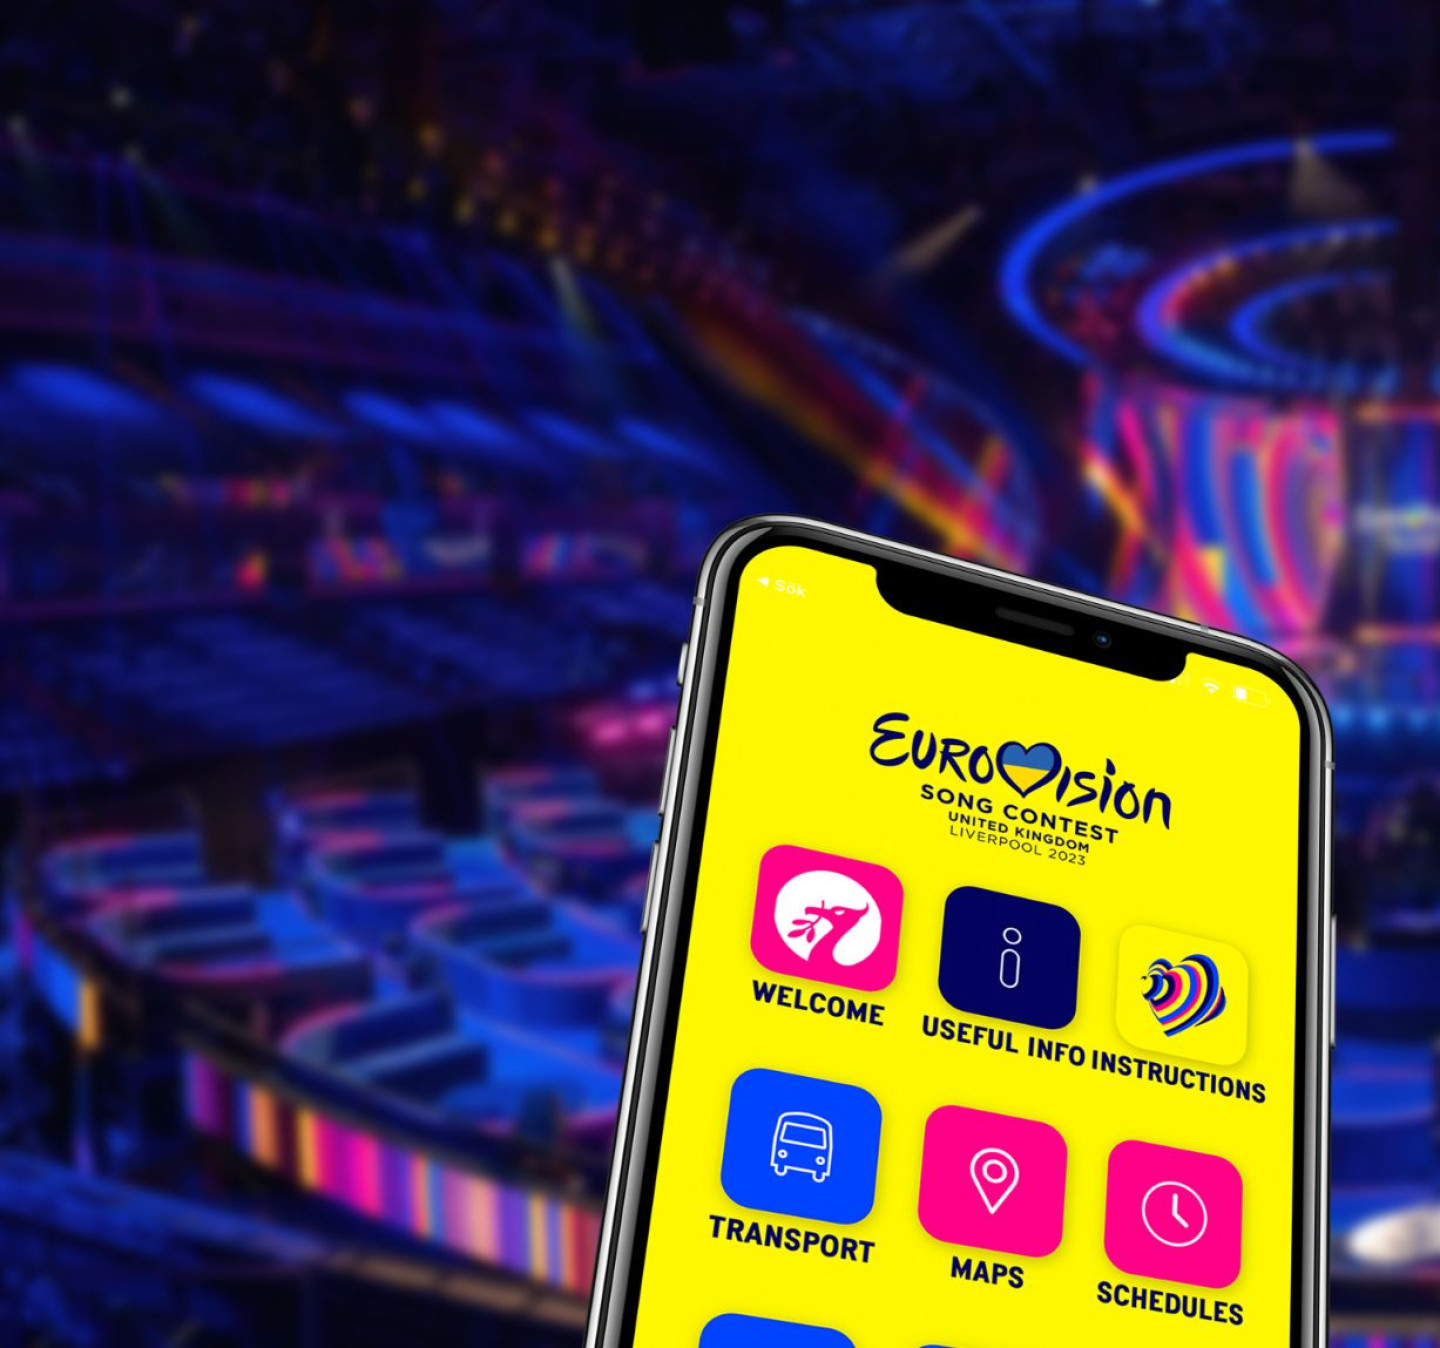 App till Eurovision 2023